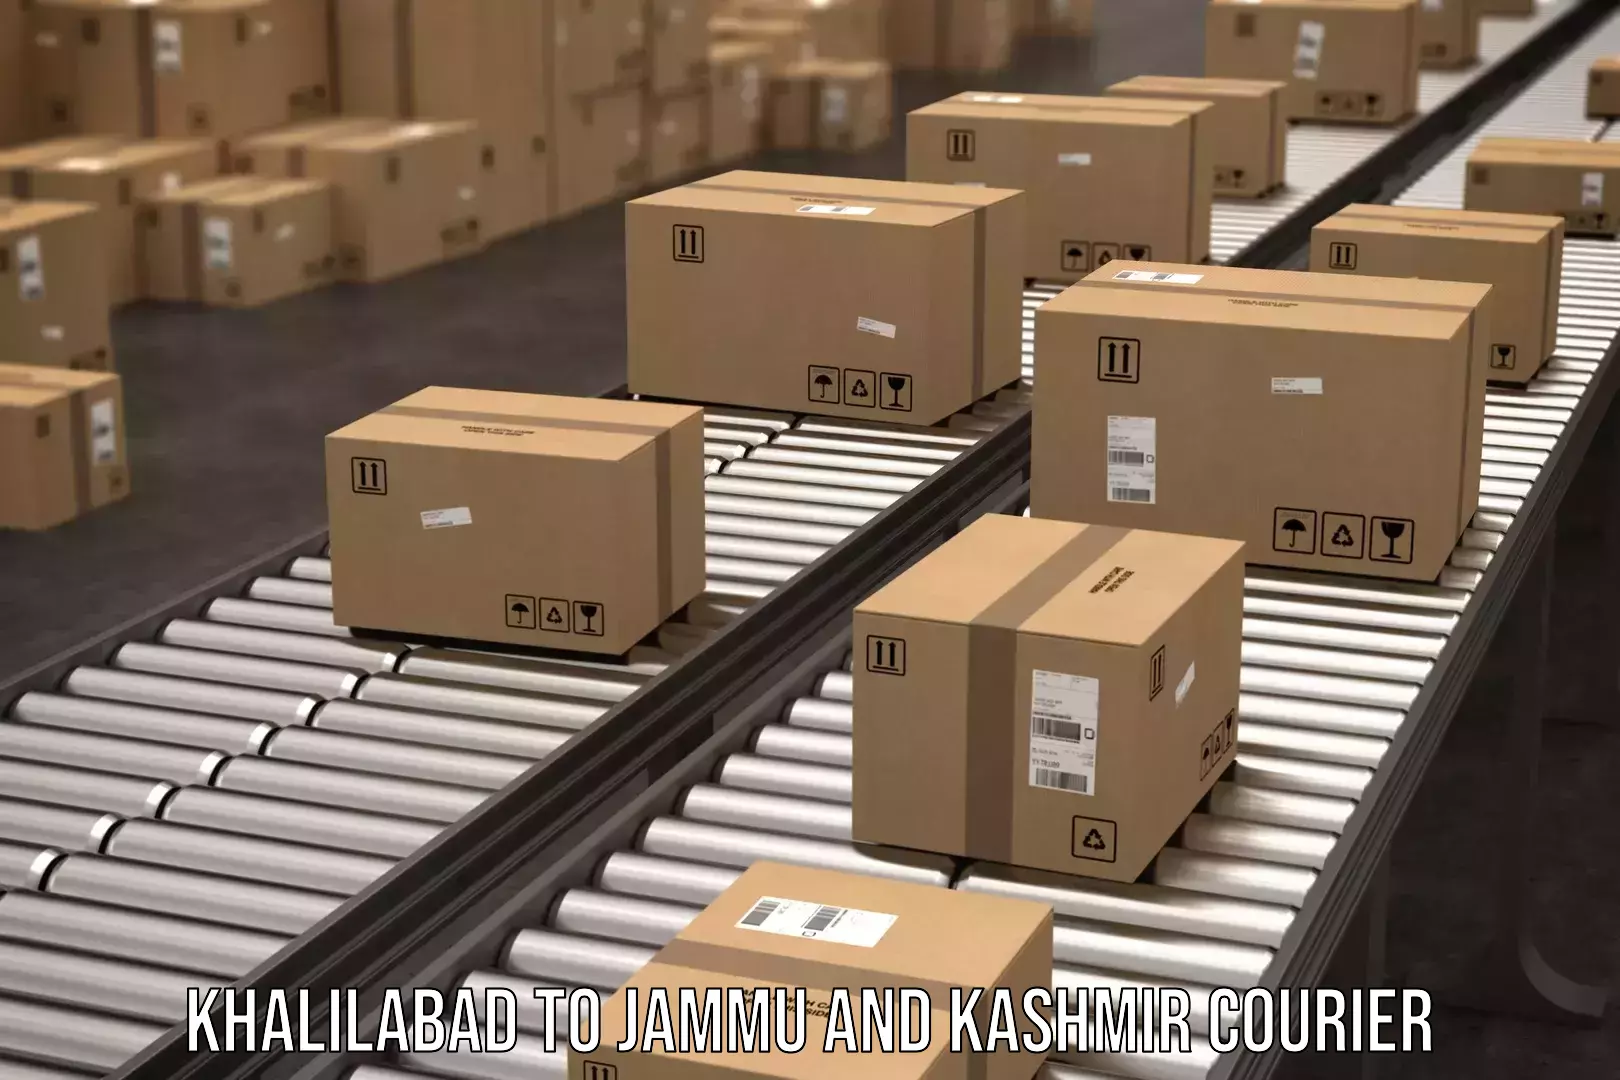 High-capacity parcel service Khalilabad to Baramulla